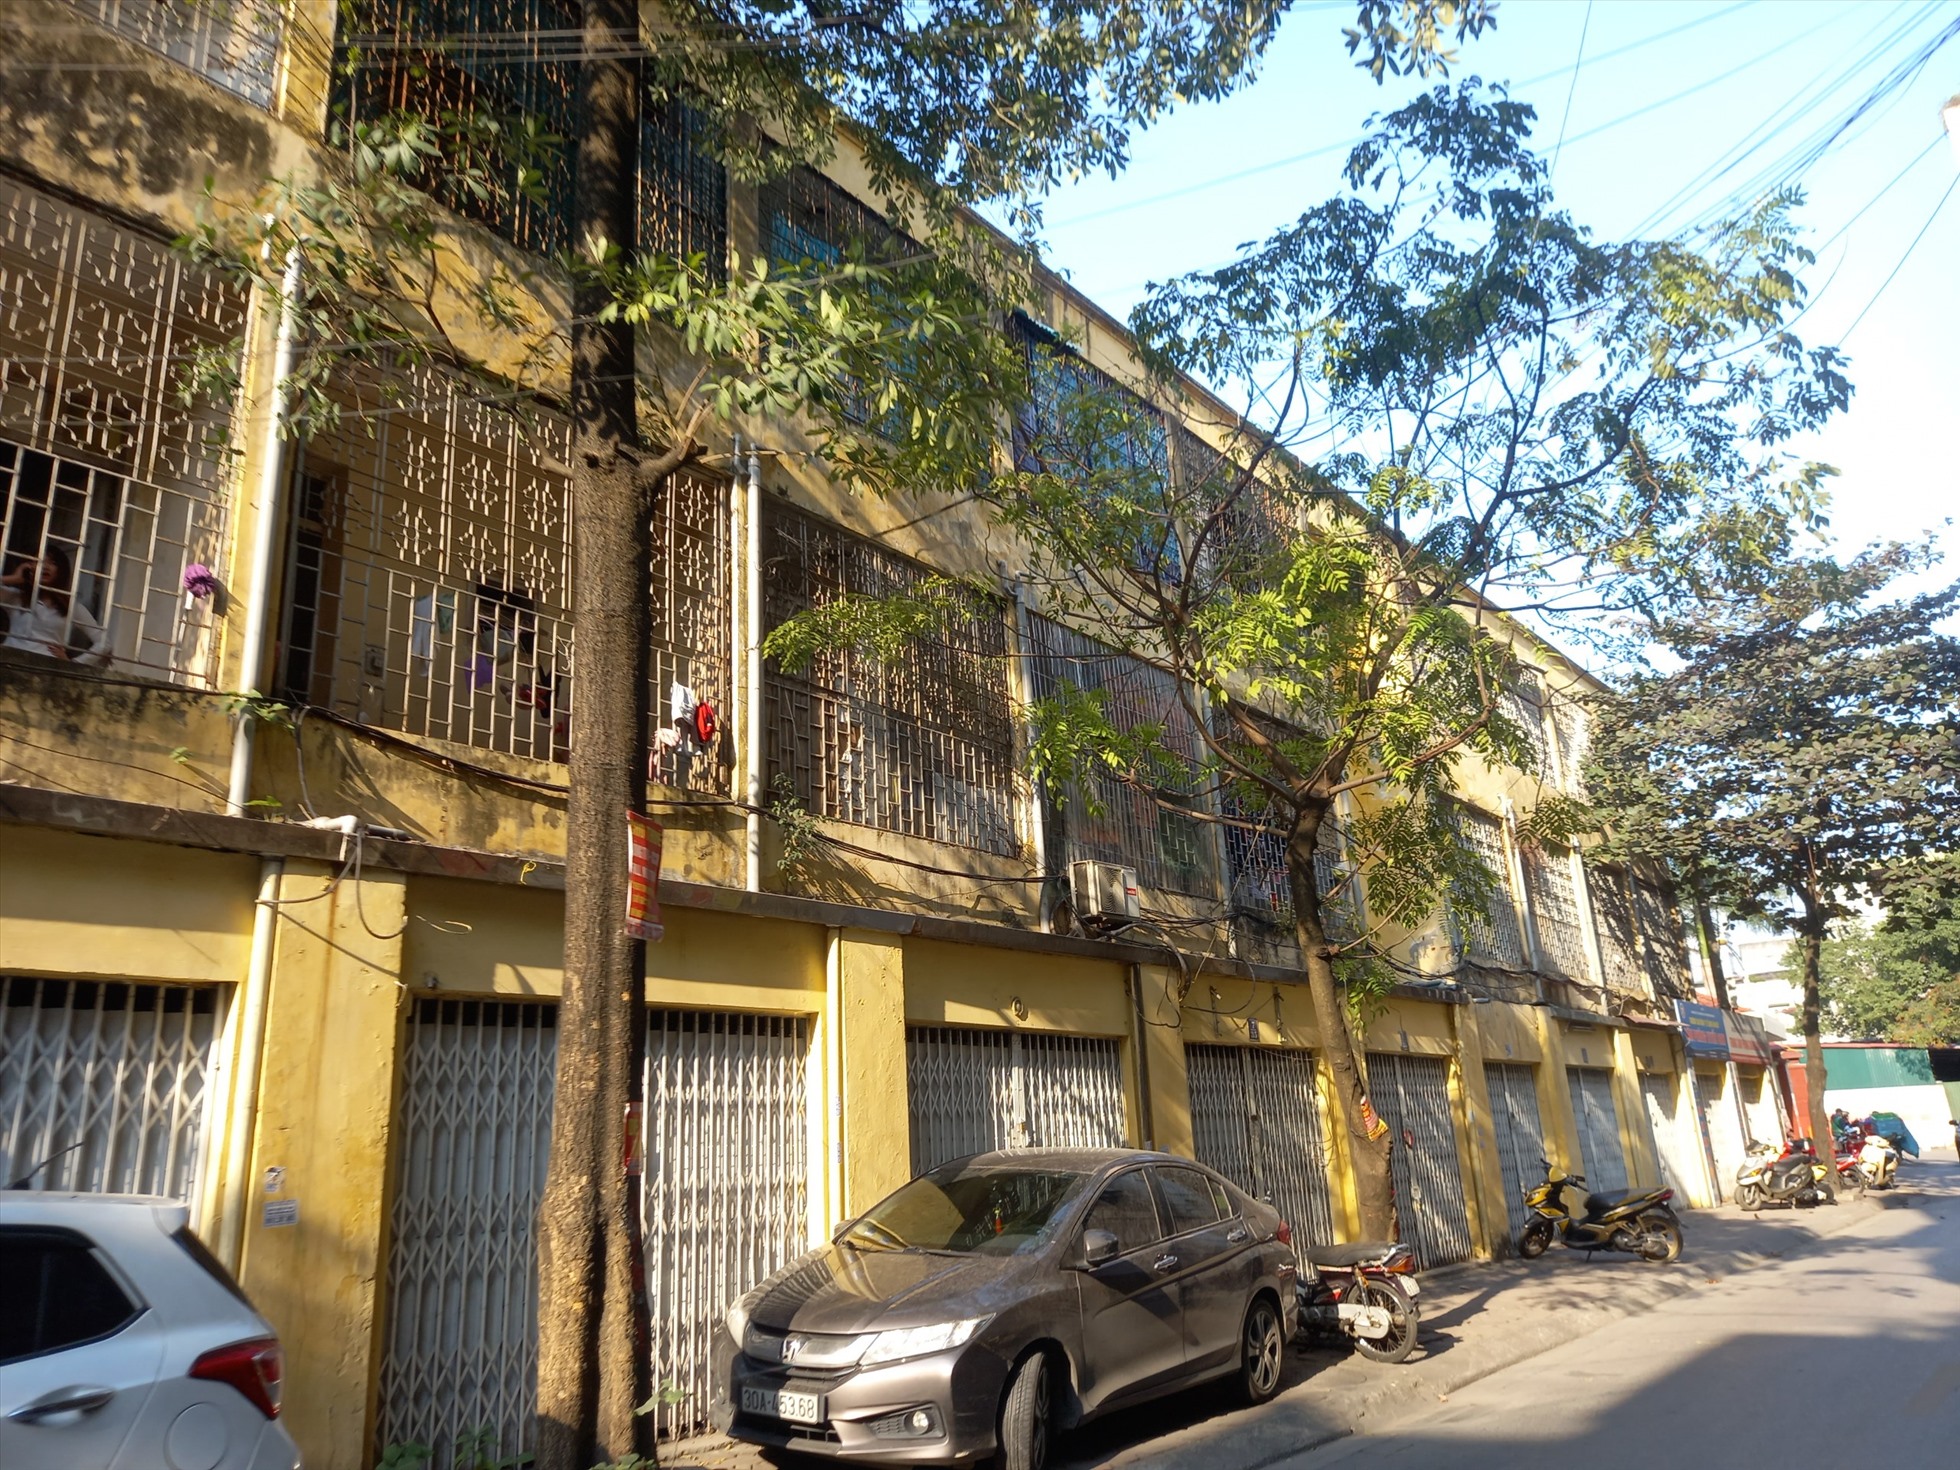 Việc cải tạo, chỉnh trang các khu chung cư cũ ở Hà Nội đang được người dân hết sức mong chờ. Ảnh: Hiếu Anh